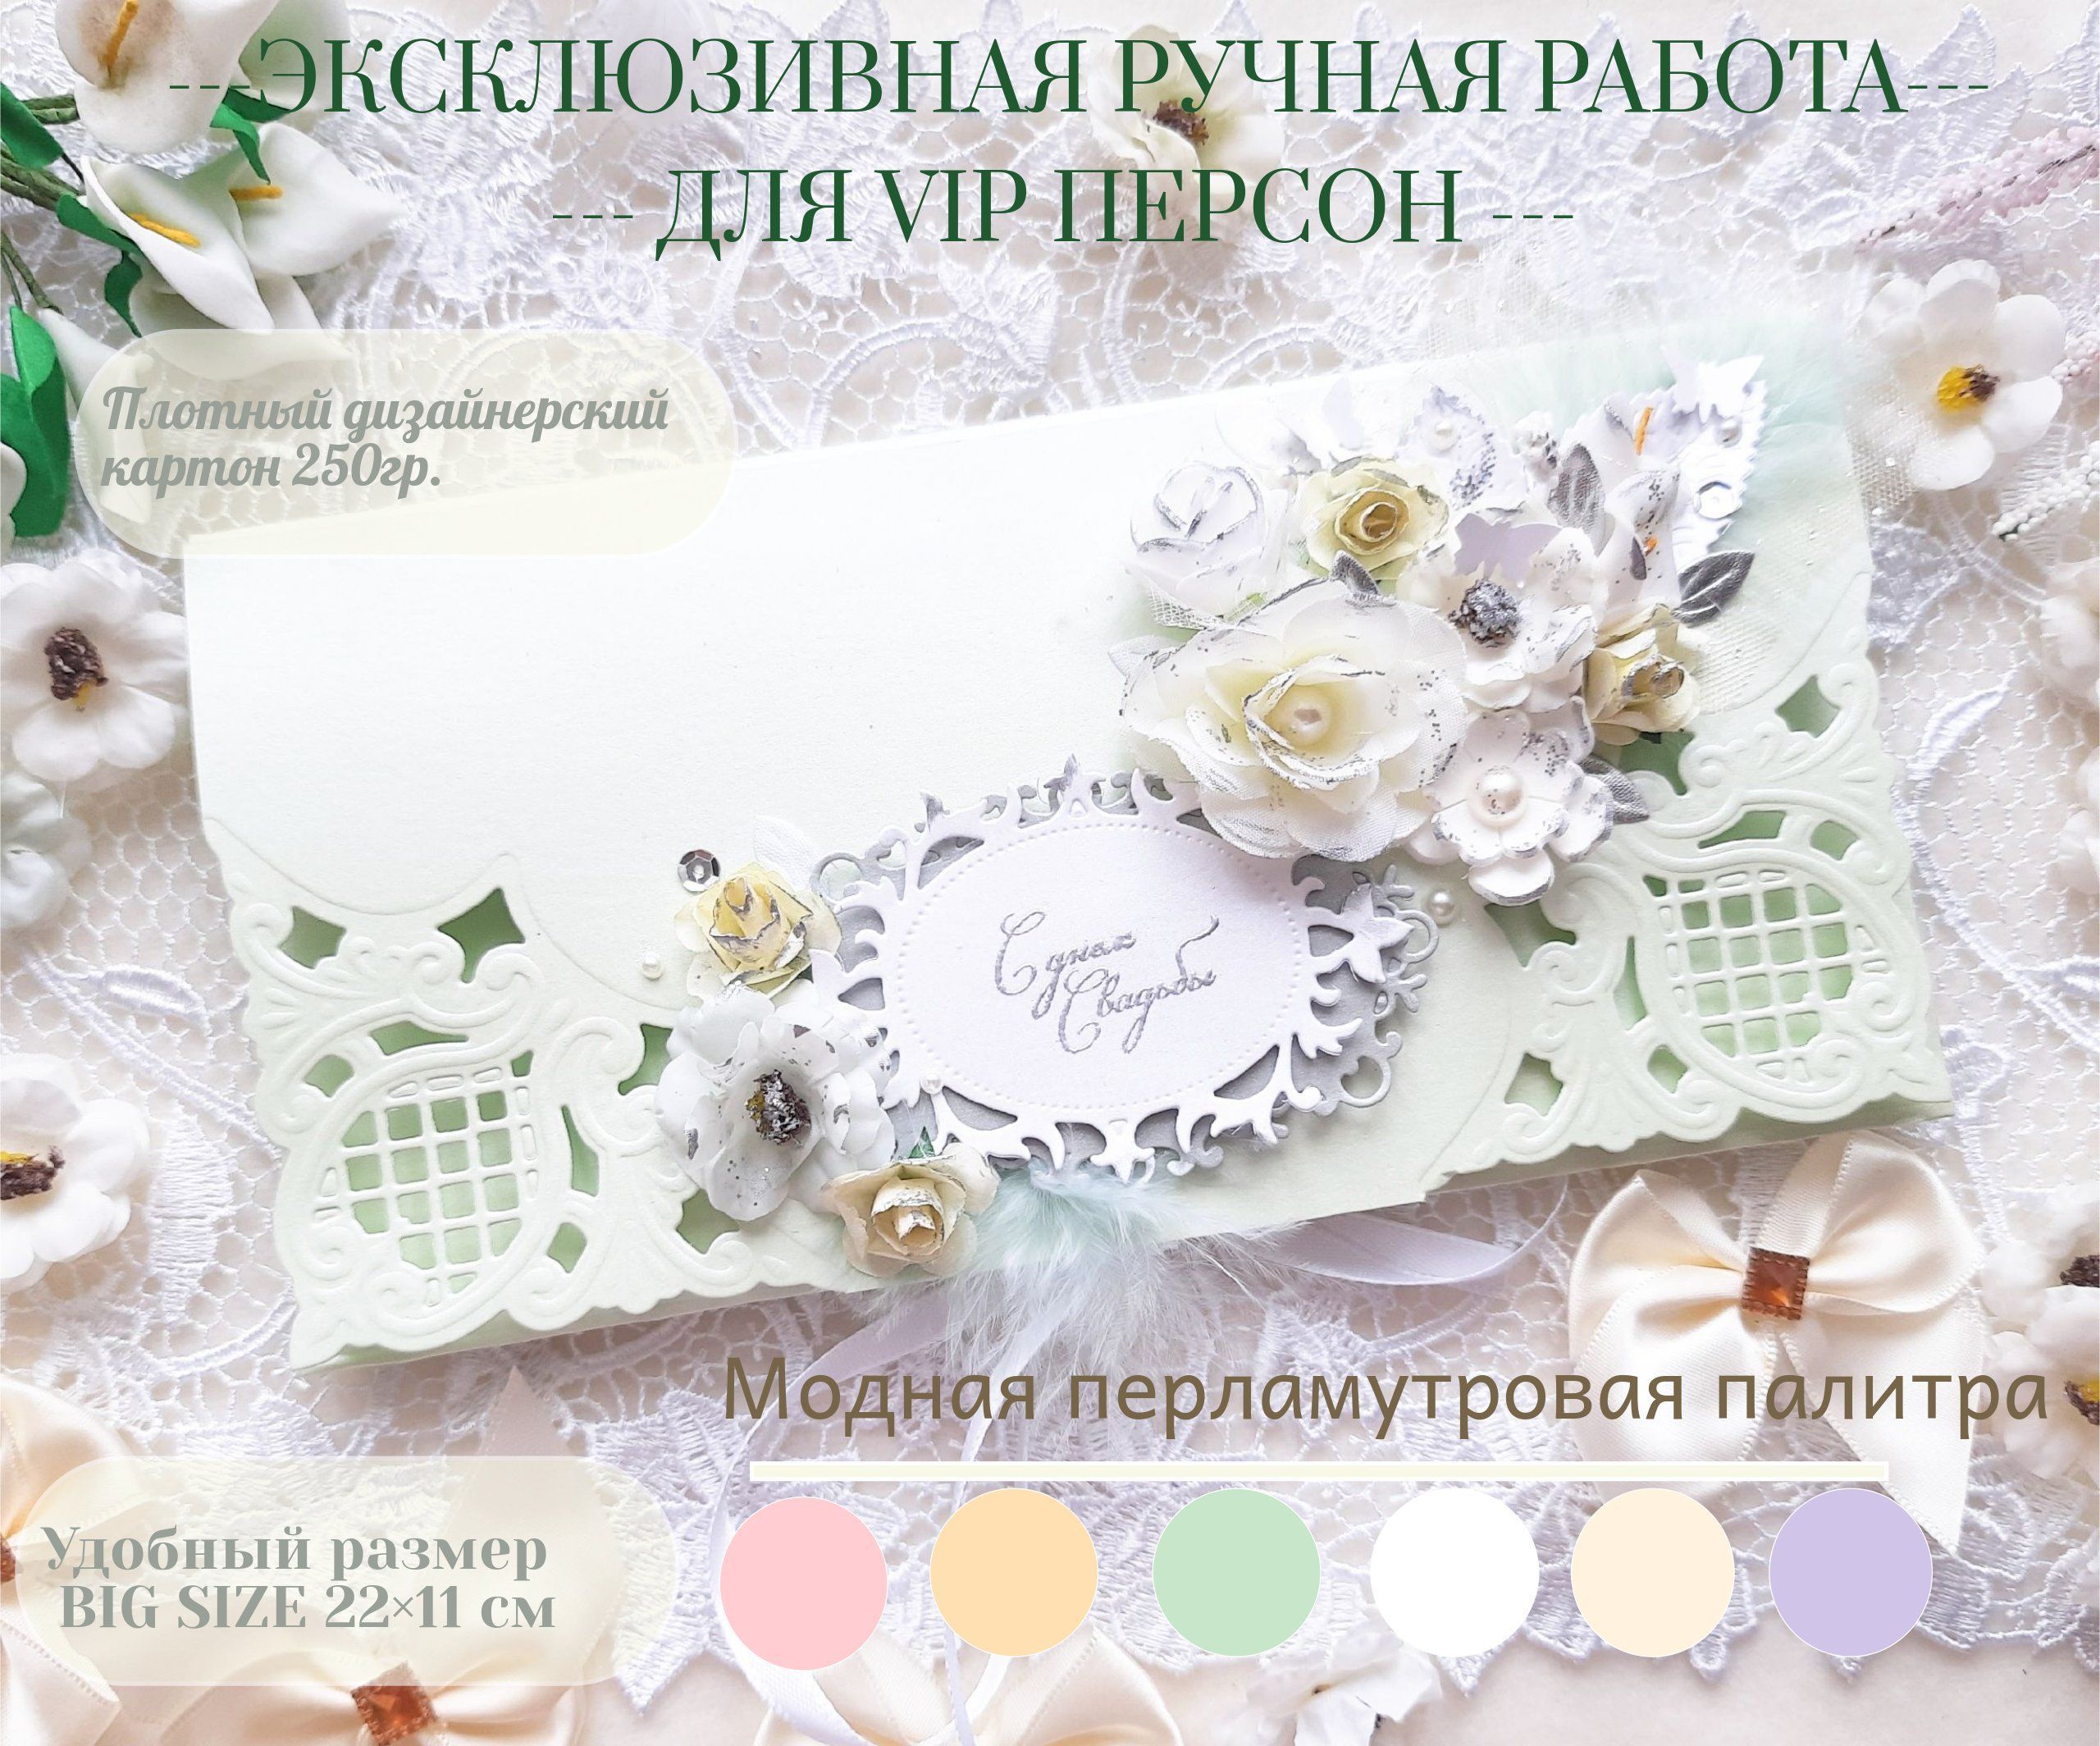 Создание открытки и приглашения на свадьбу в технике скрапбукинг